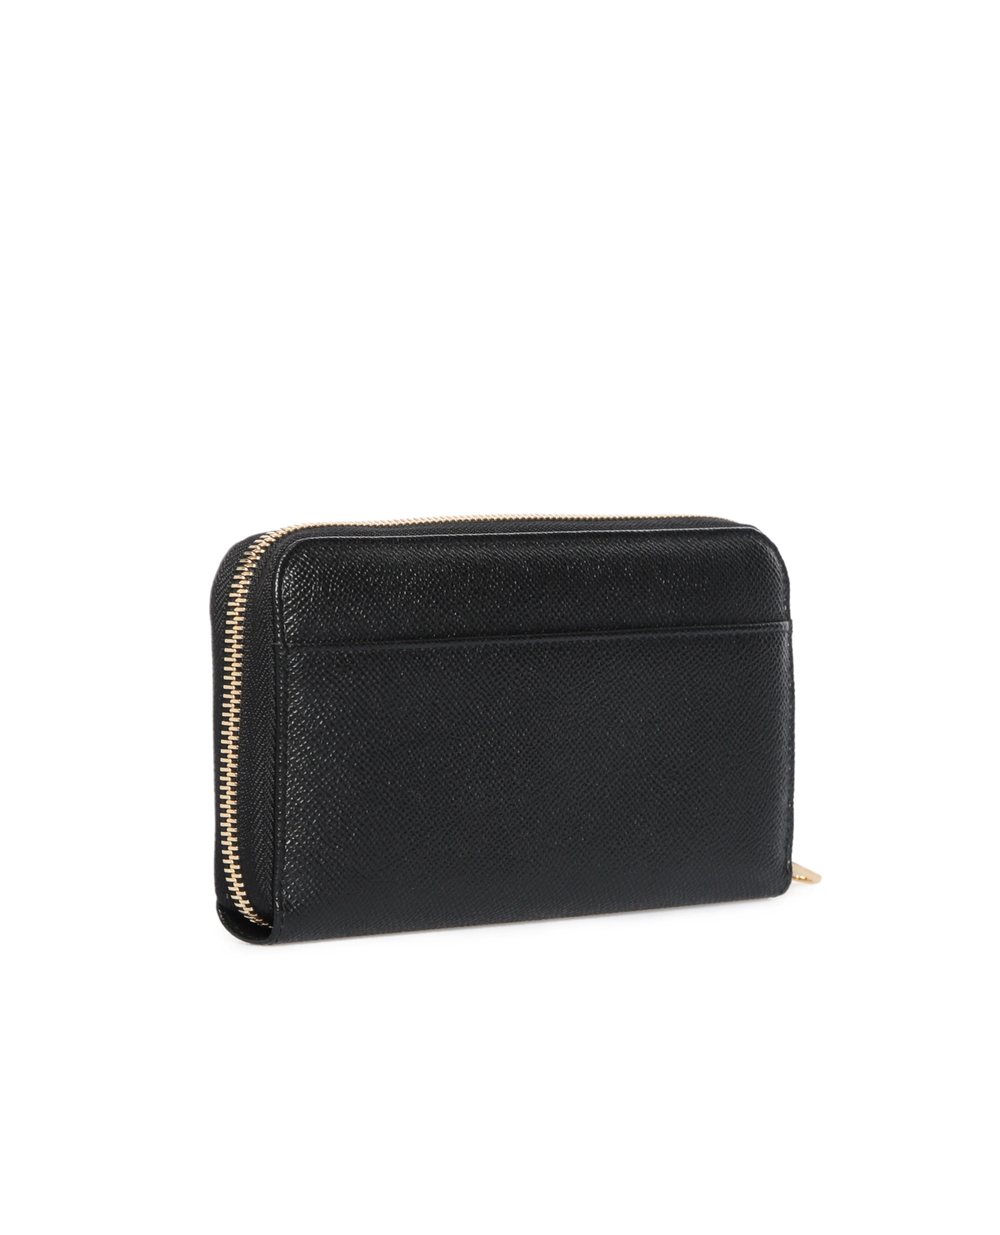 Кожаный кошелек Dolce&Gabbana BI0473-A1001SS17, черный цвет • Купить в интернет-магазине Kameron